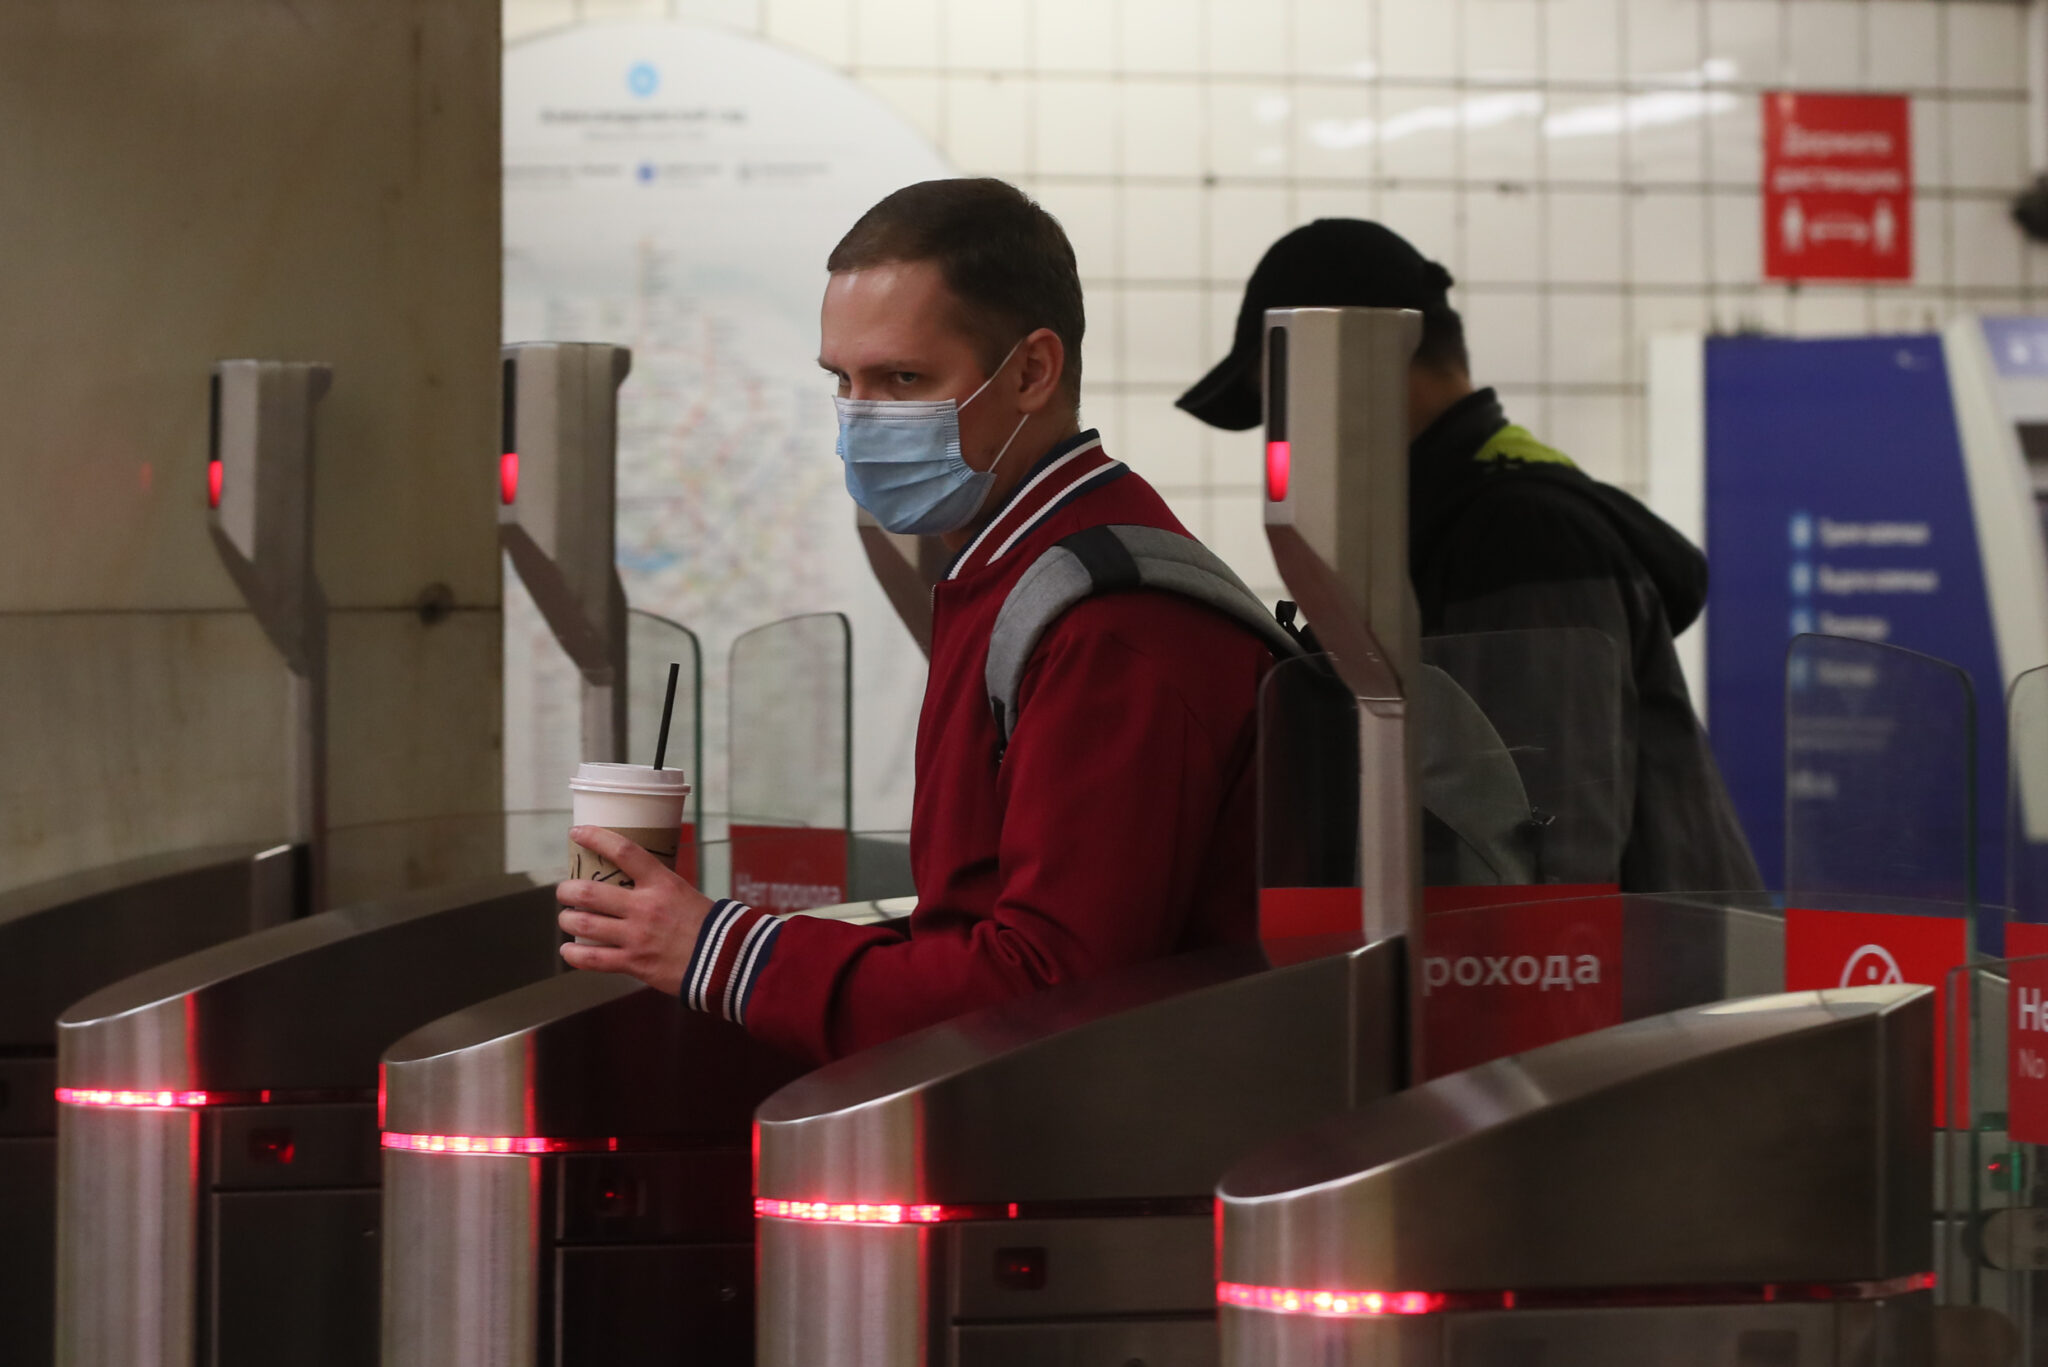 Пассажиры метро в масках. Фото Vladimir Gerdo/TASS/ Scanpix / Leta